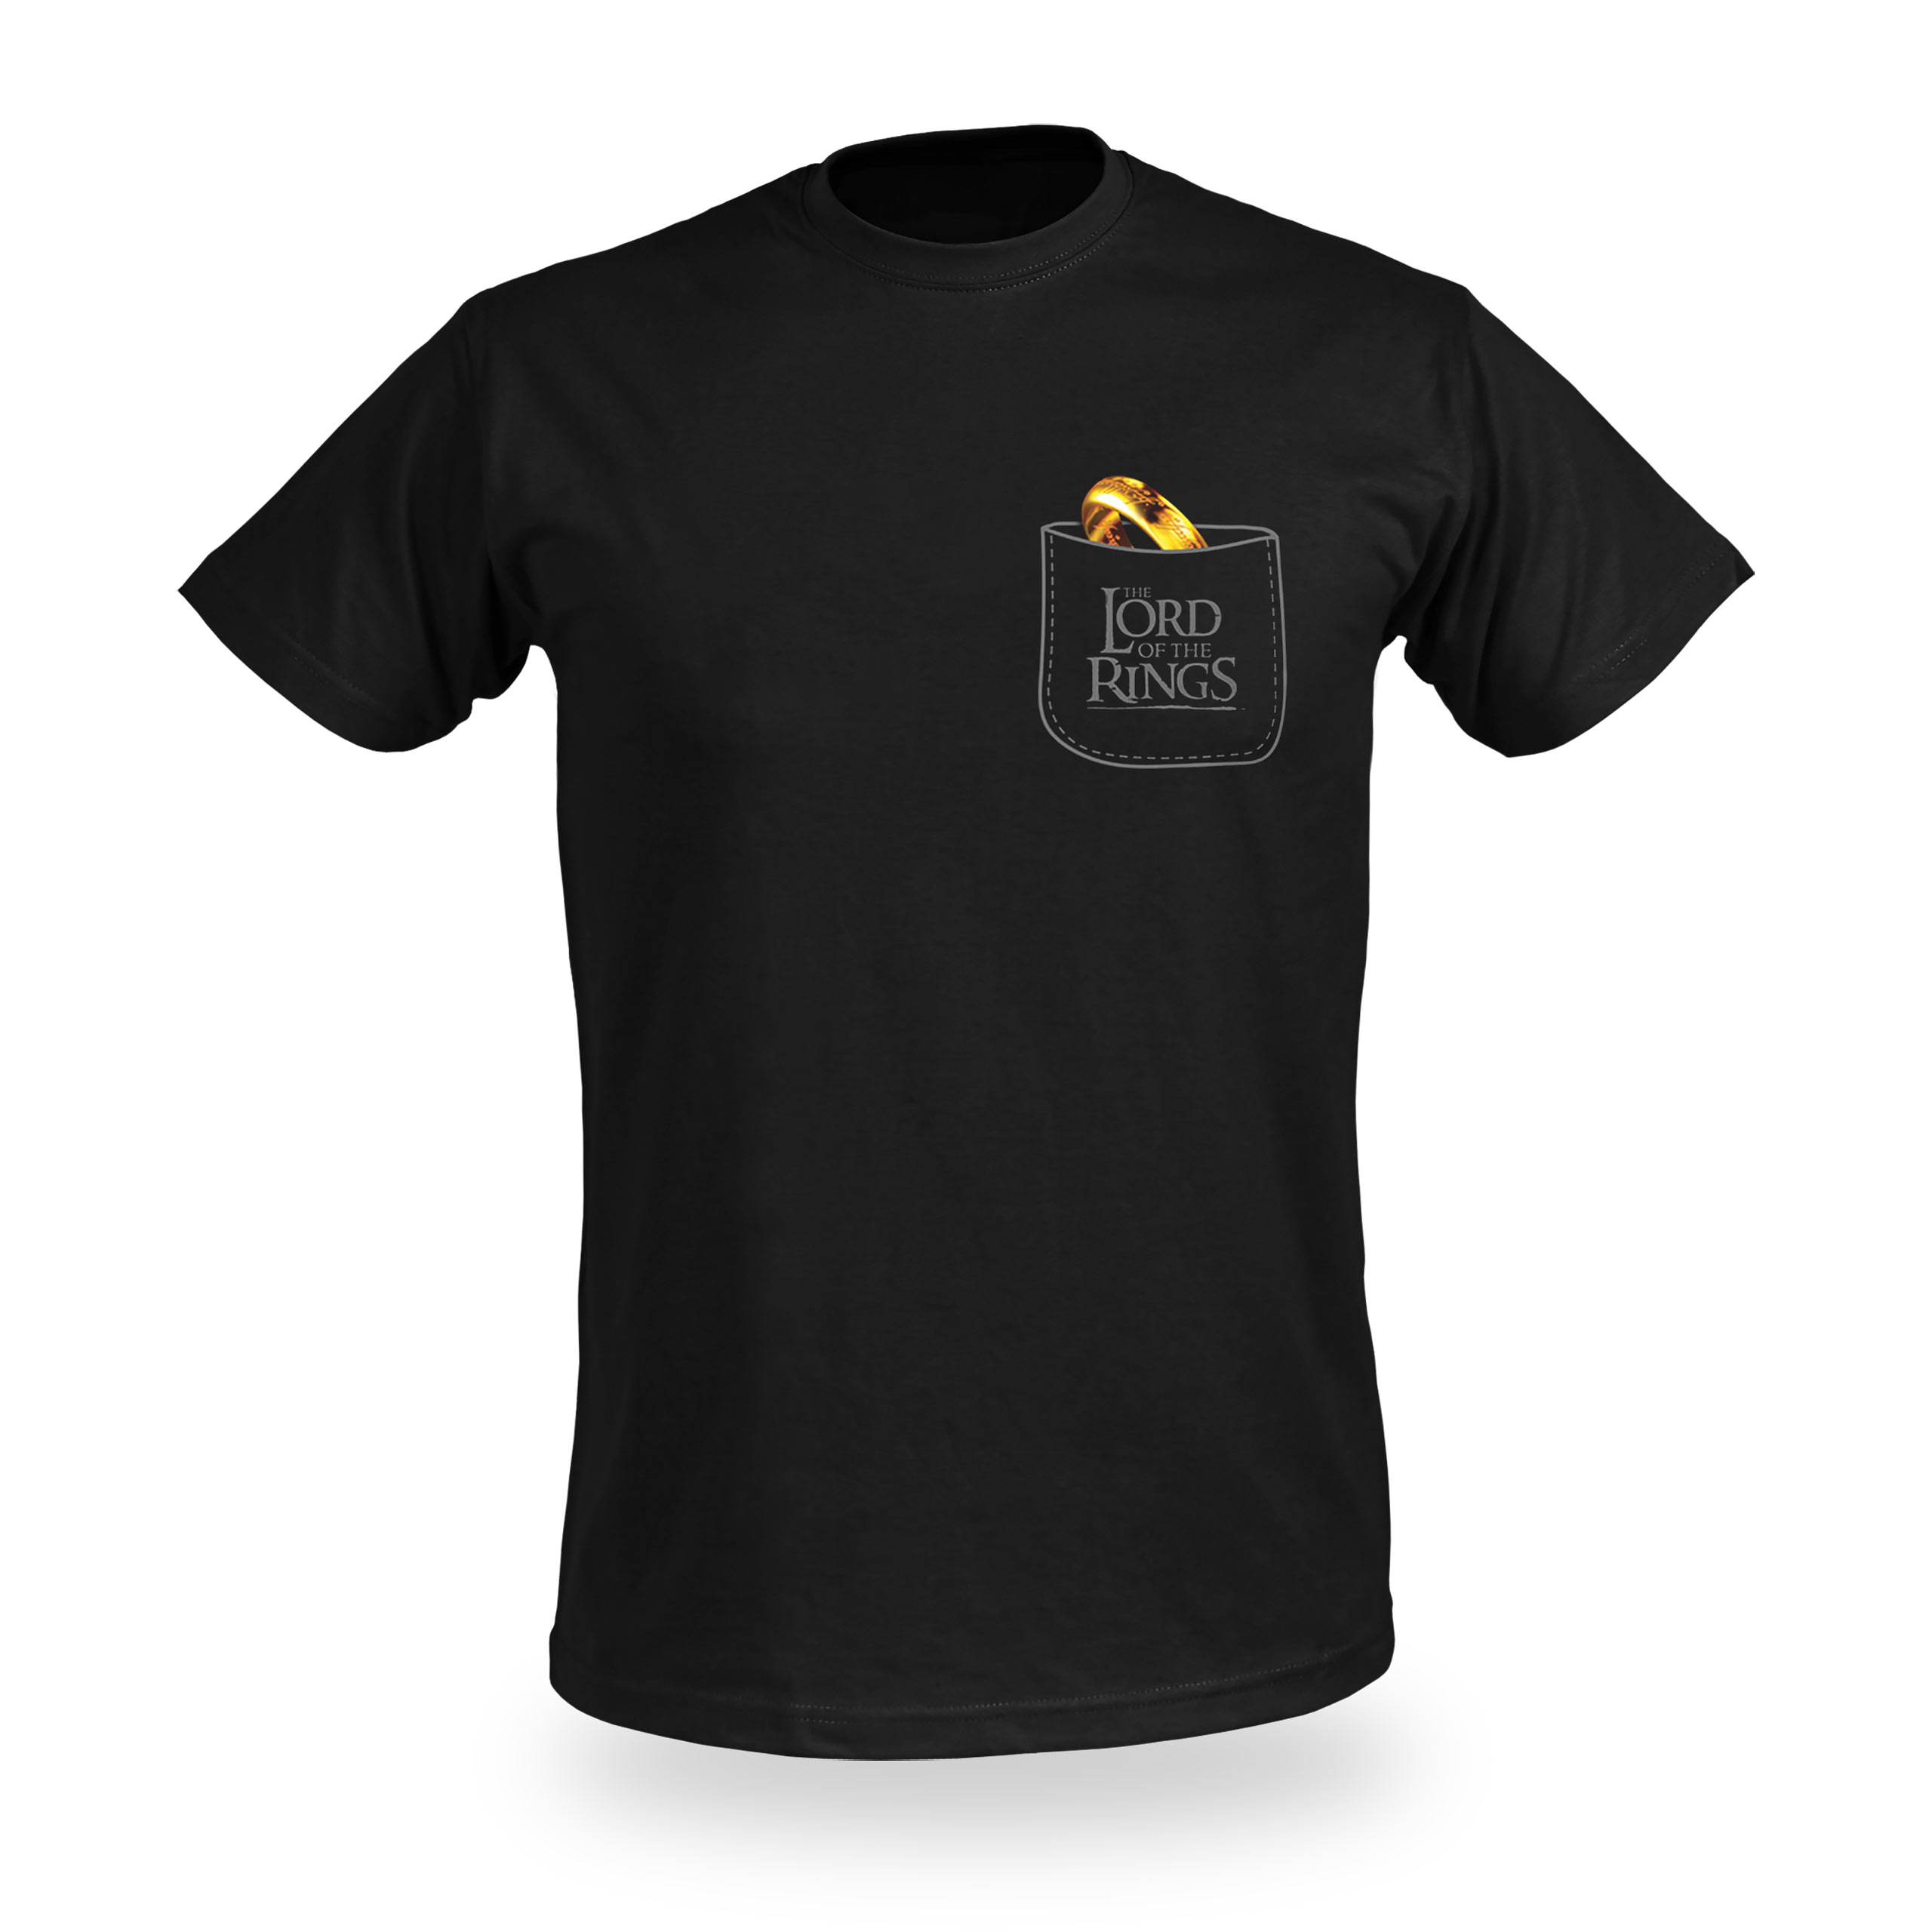 Herr der Ringe - Der Eine Ring Pocket T-Shirt schwarz